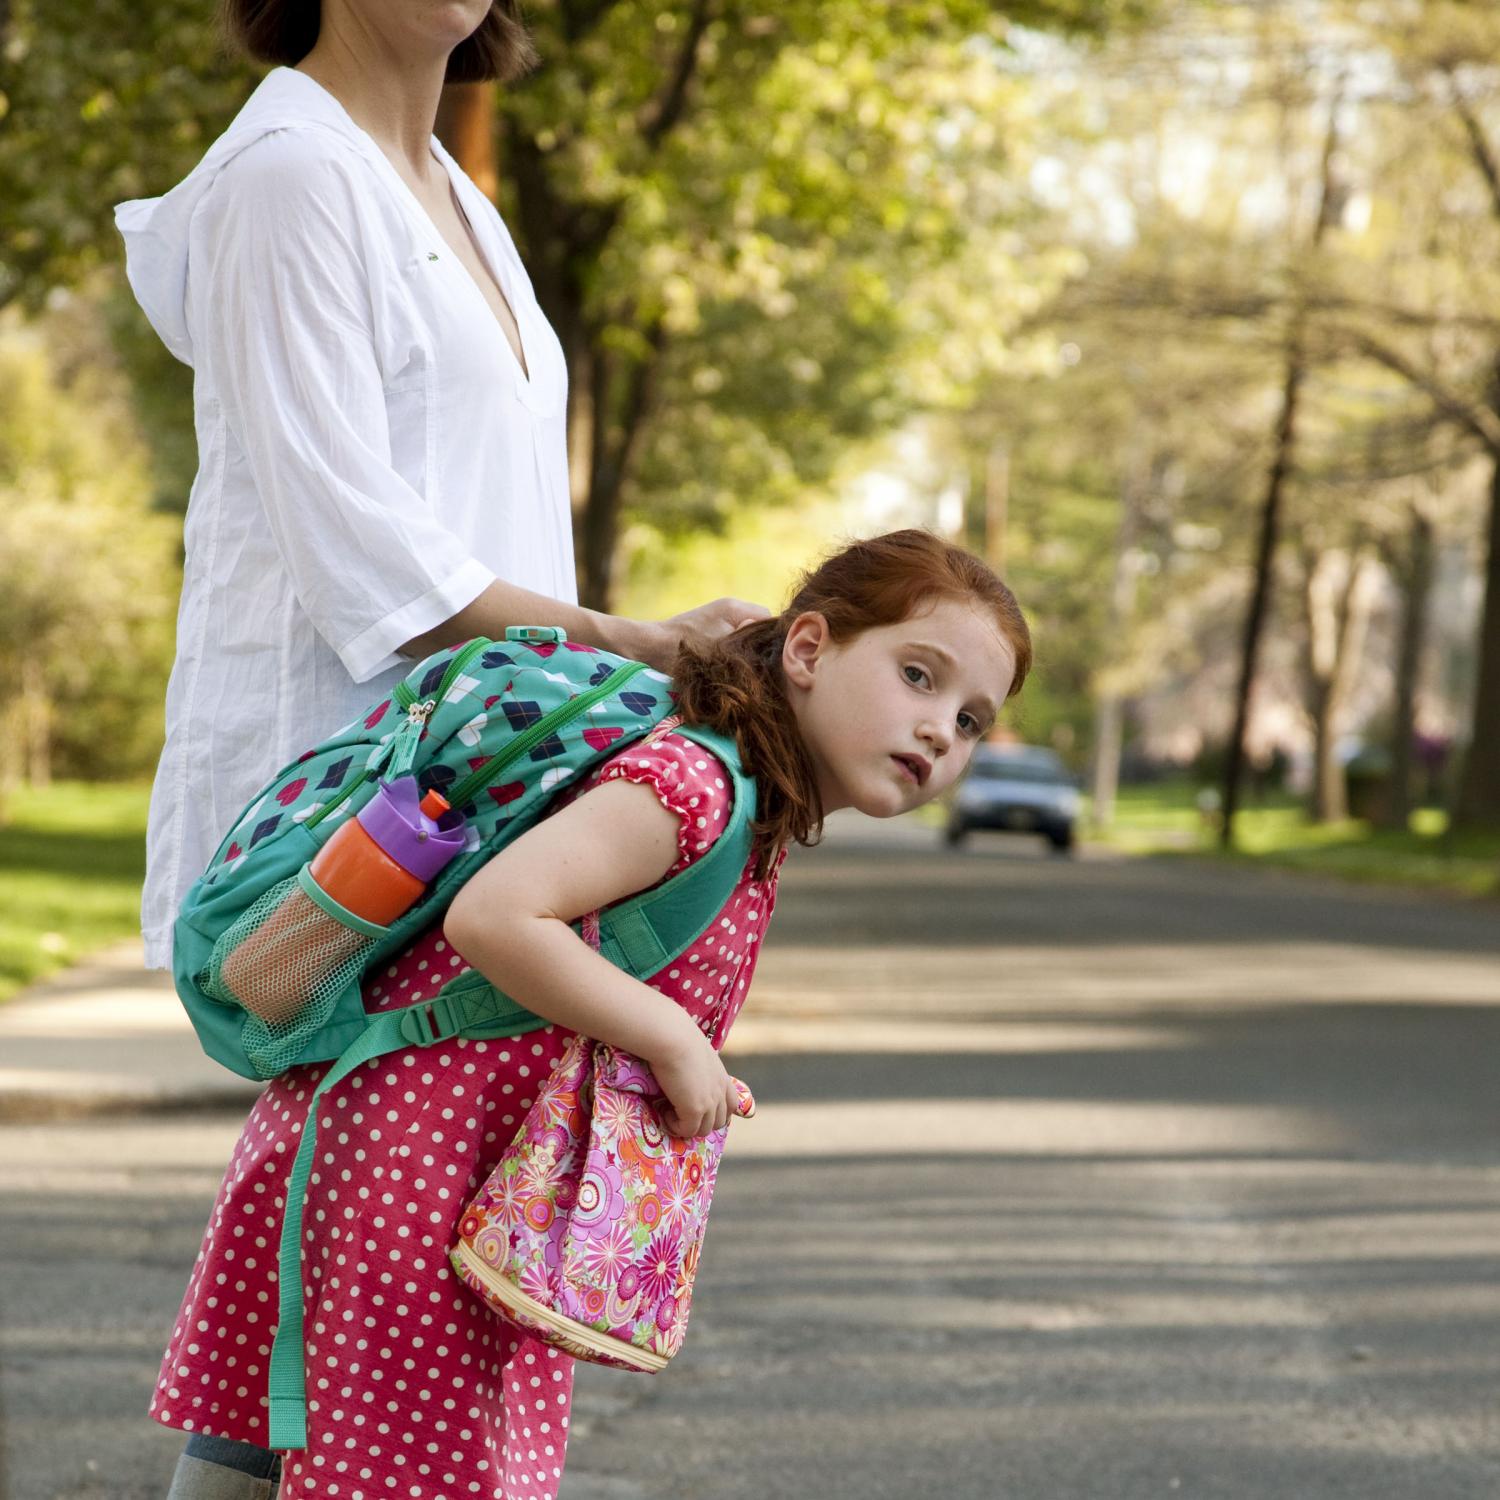 რჩევები, რომლებიც მშობლებმა შვილებს არ უნდა მისცეთ - 5 ყველაზე ცუდი რჩევა